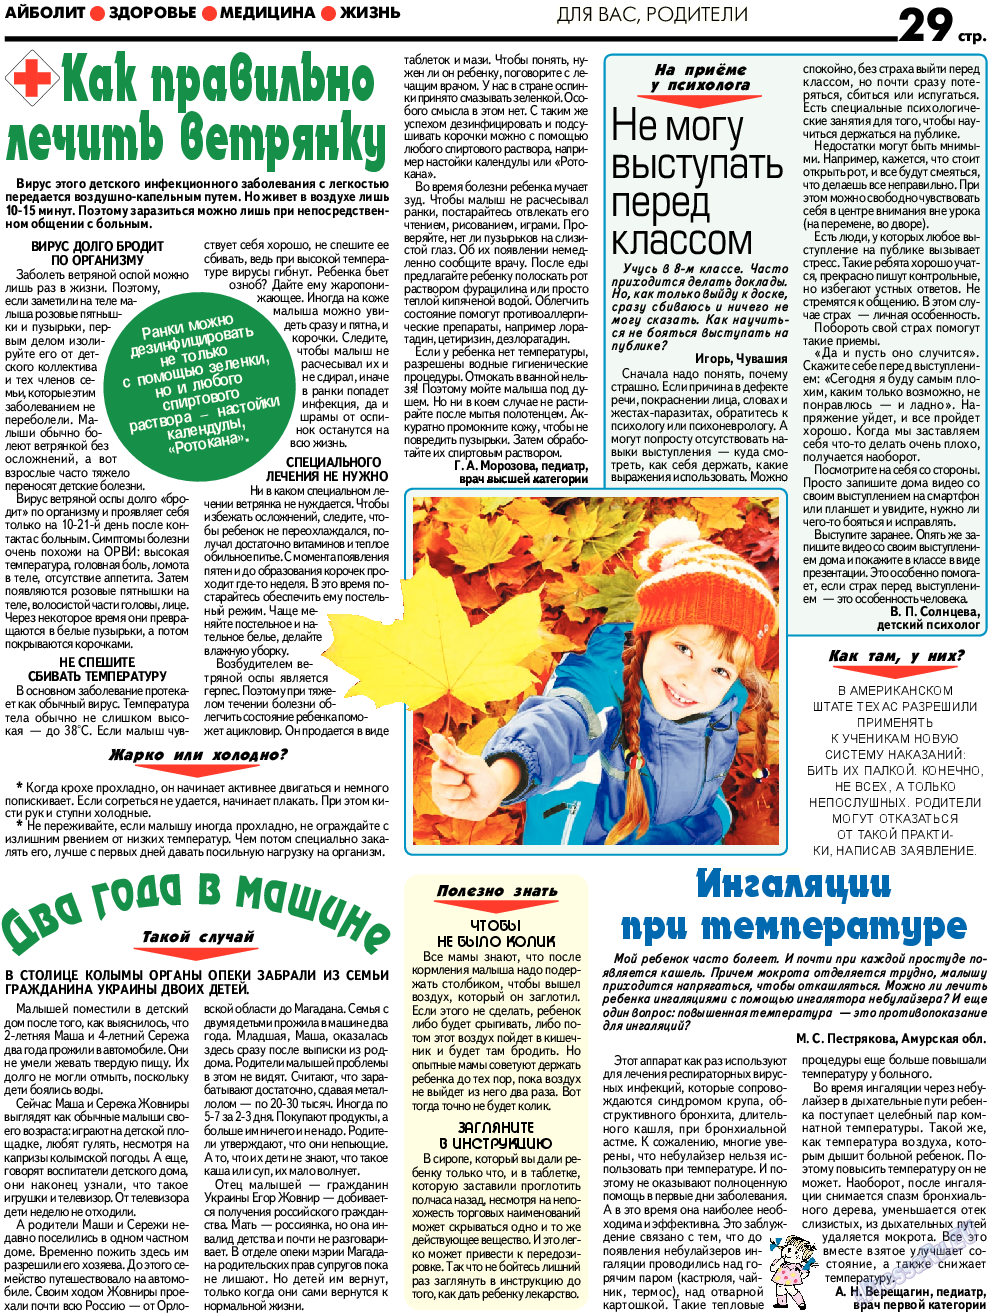 АйБолит, газета. 2017 №12 стр.29